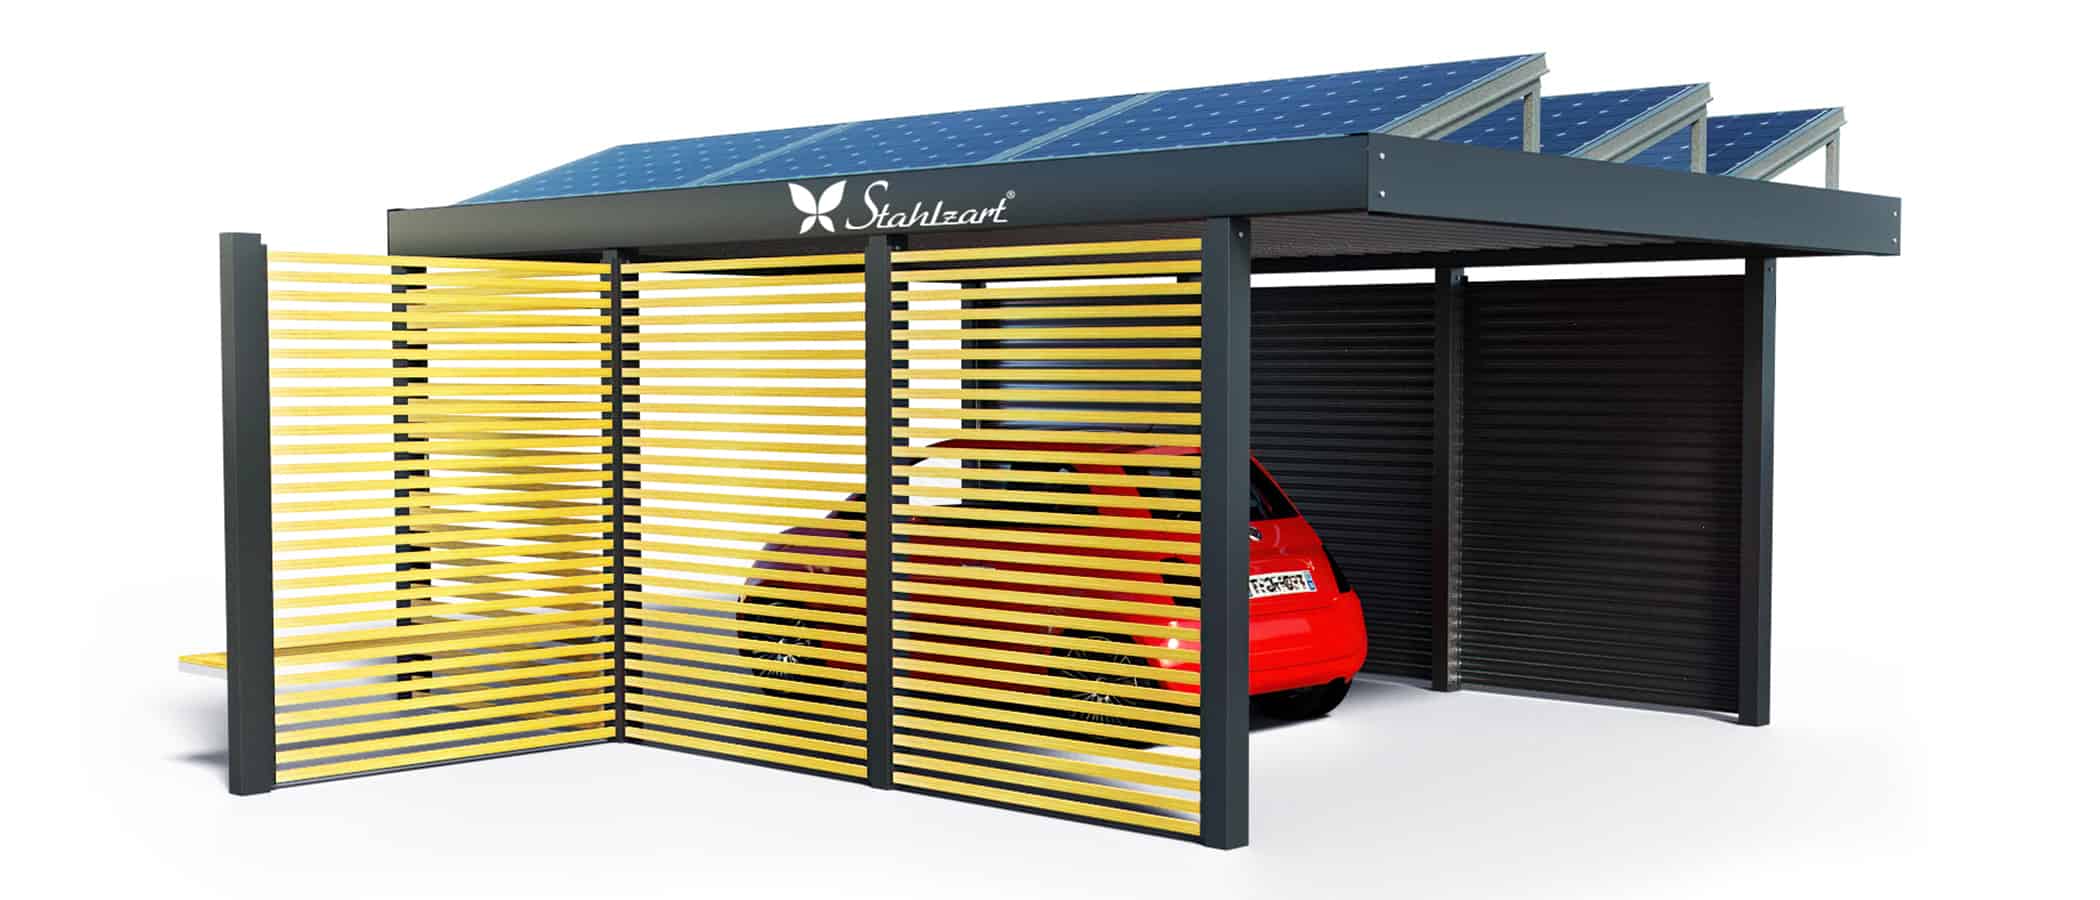 solar-carport-mit-flachdach-carports-pv-anlage-solaranlage-photovoltaik-garagen-garagendach-solarcarport-installation-solarmodulen-solarcarports-dach-e-auto-fiat-holz-metall-sitzecke-stahlzart